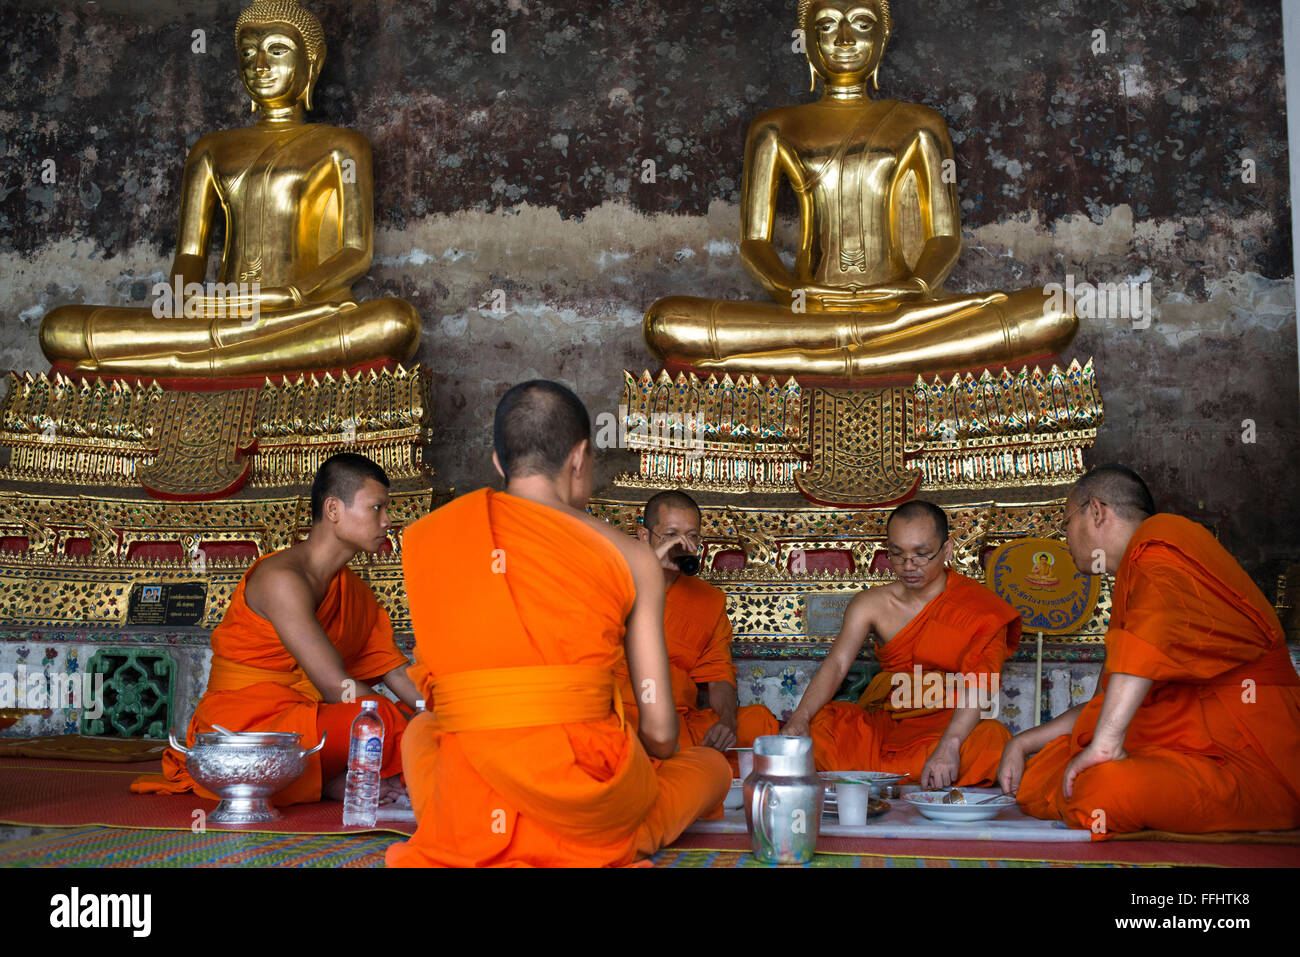 Monks praying in Wat Suthat Thepwararam Temple. Bangkok. Monks at Wat Suthat Thepwararam Ratchaworamahaviharn, Bangkok, Thailand Stock Photo